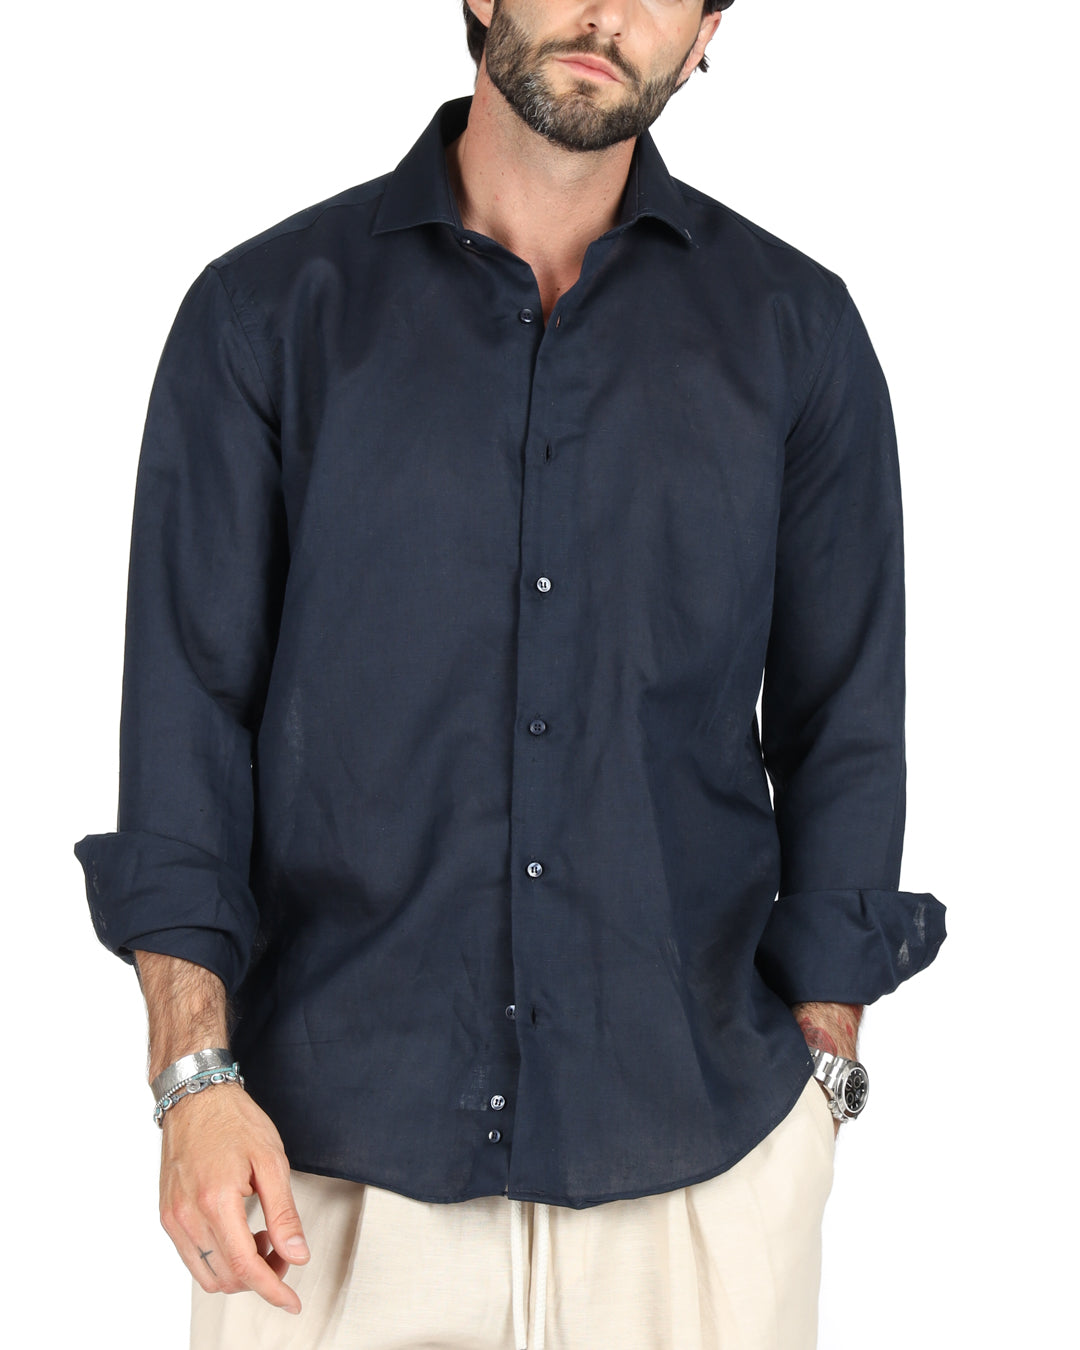 Praiano - Classic blue linen shirt